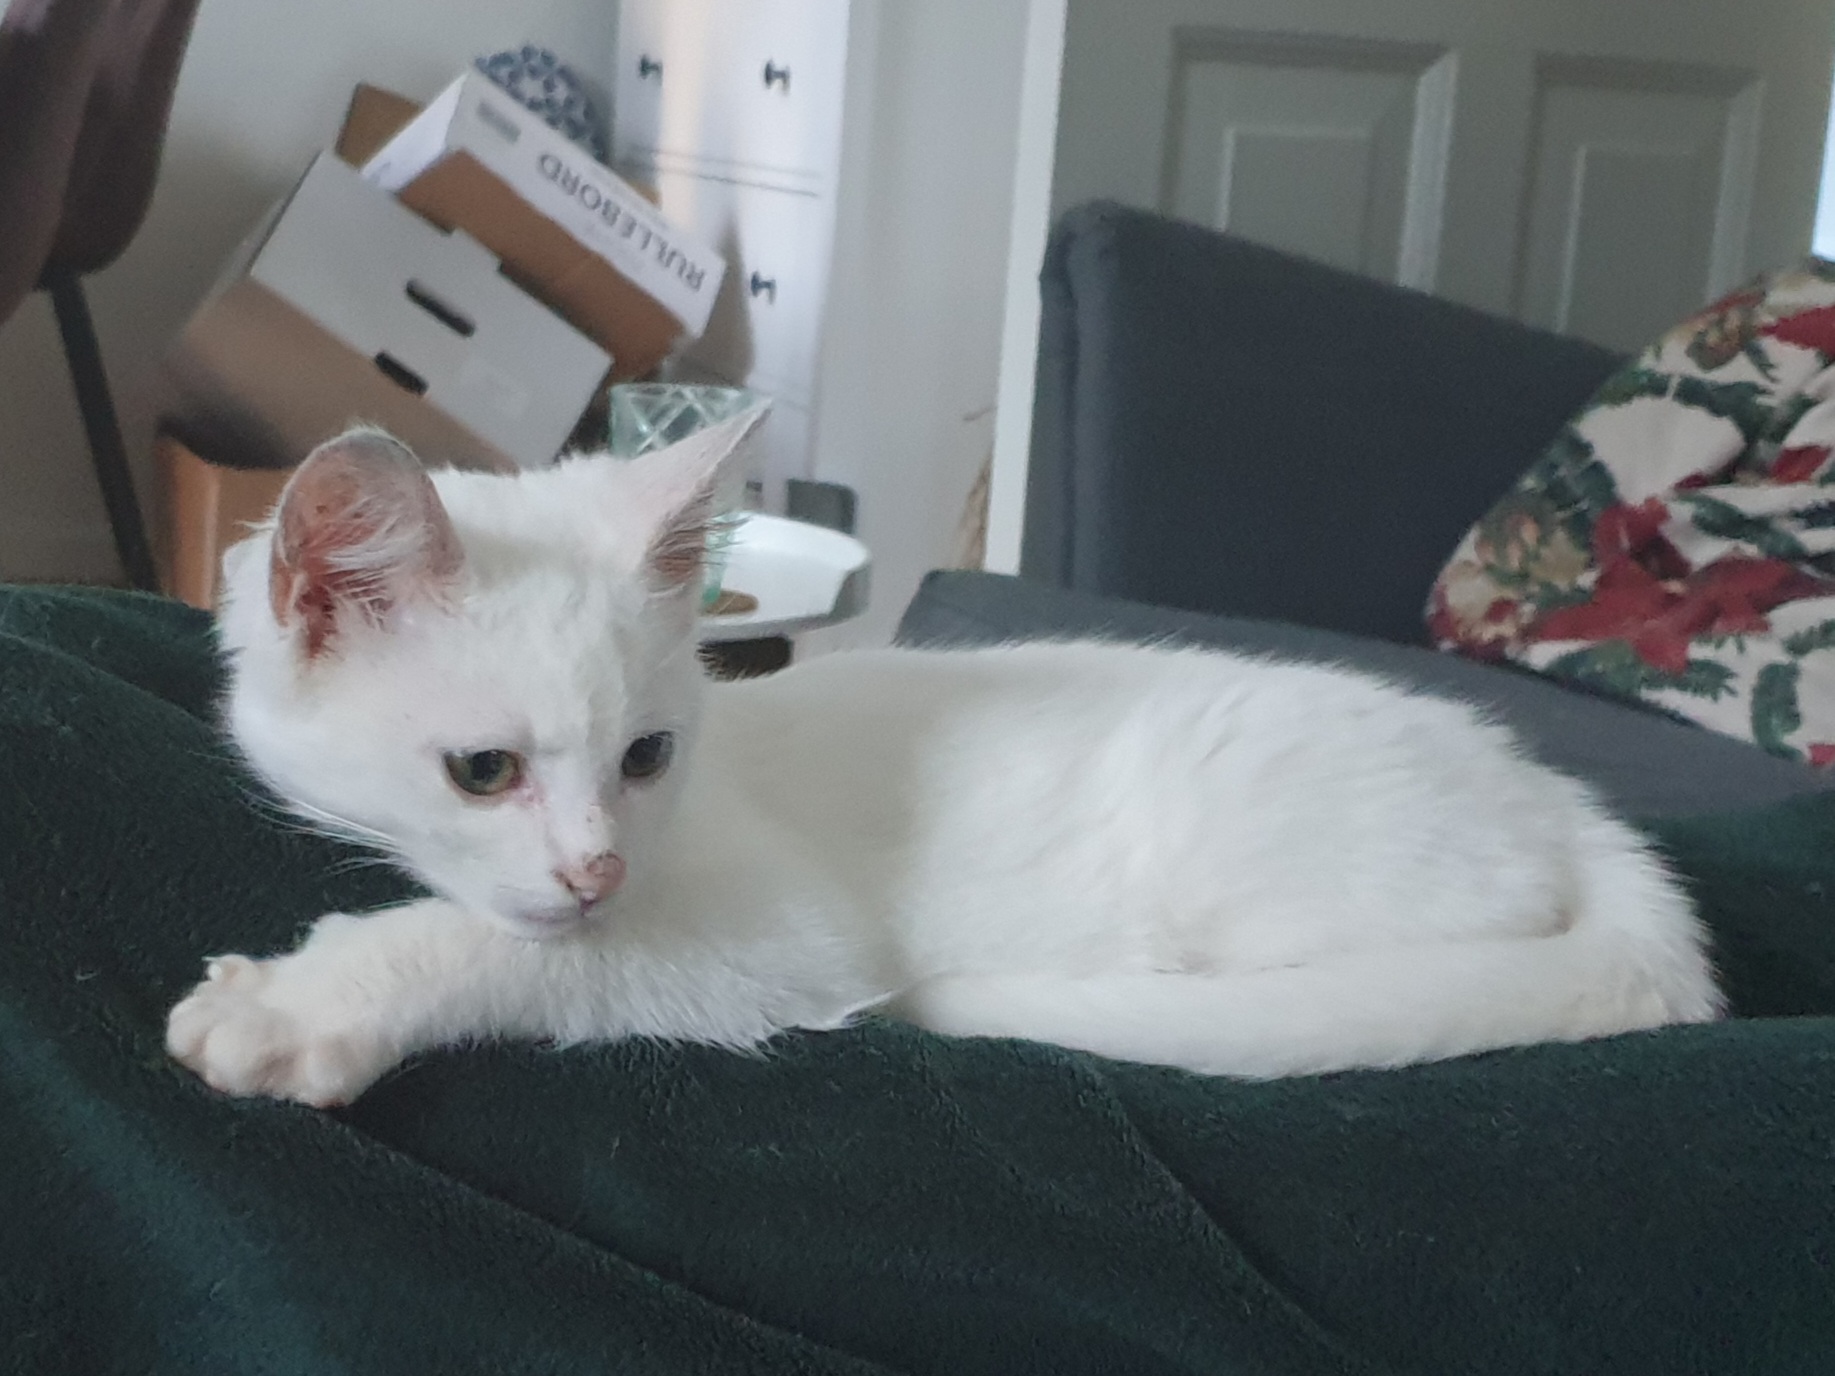 Popkorn as a kitten lying on a green blanket